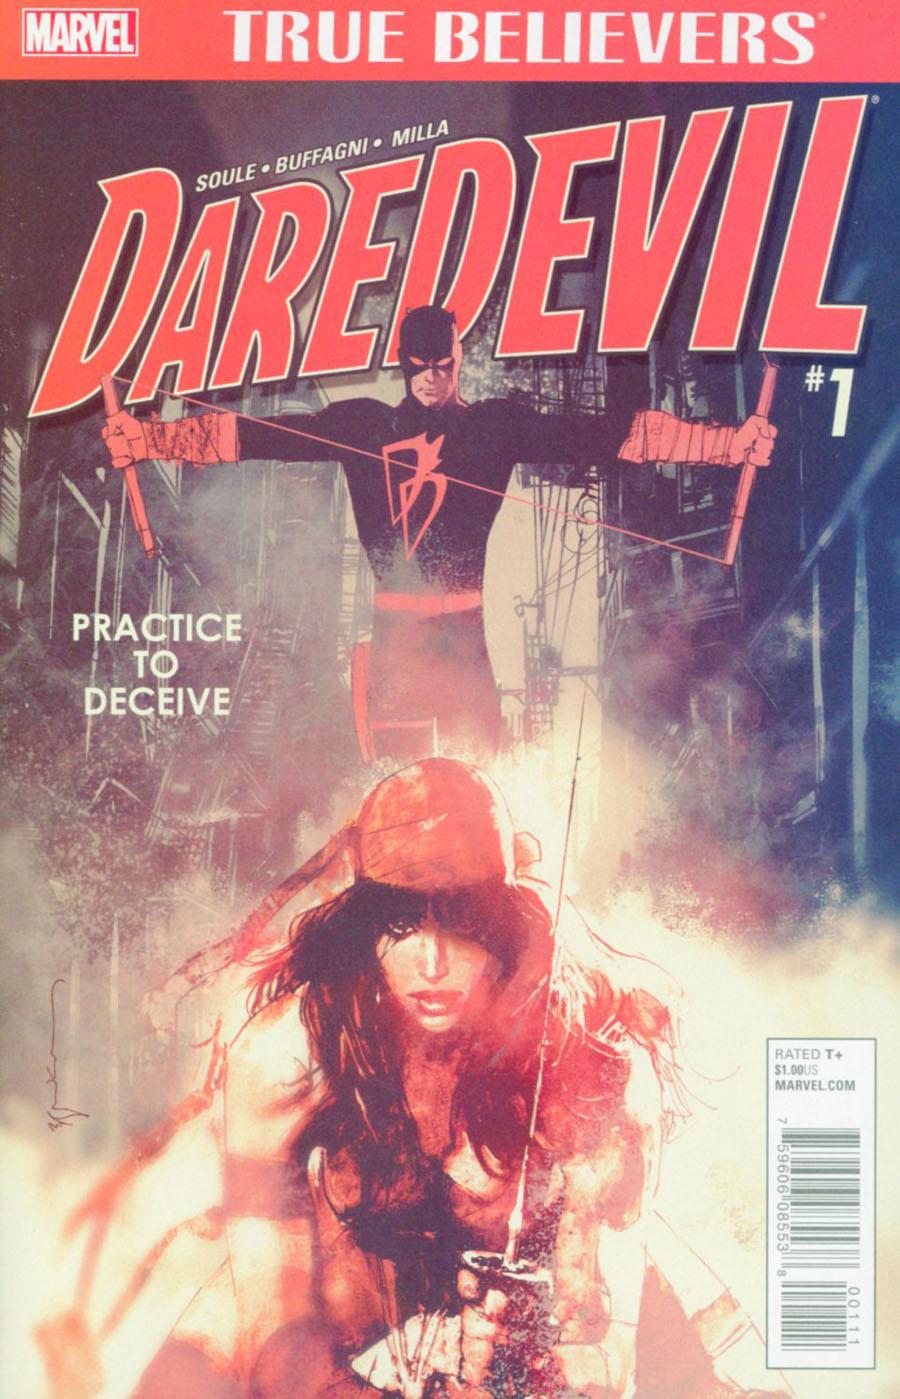 True Believers Daredevil Practice To Deceive Vol. 1 #1